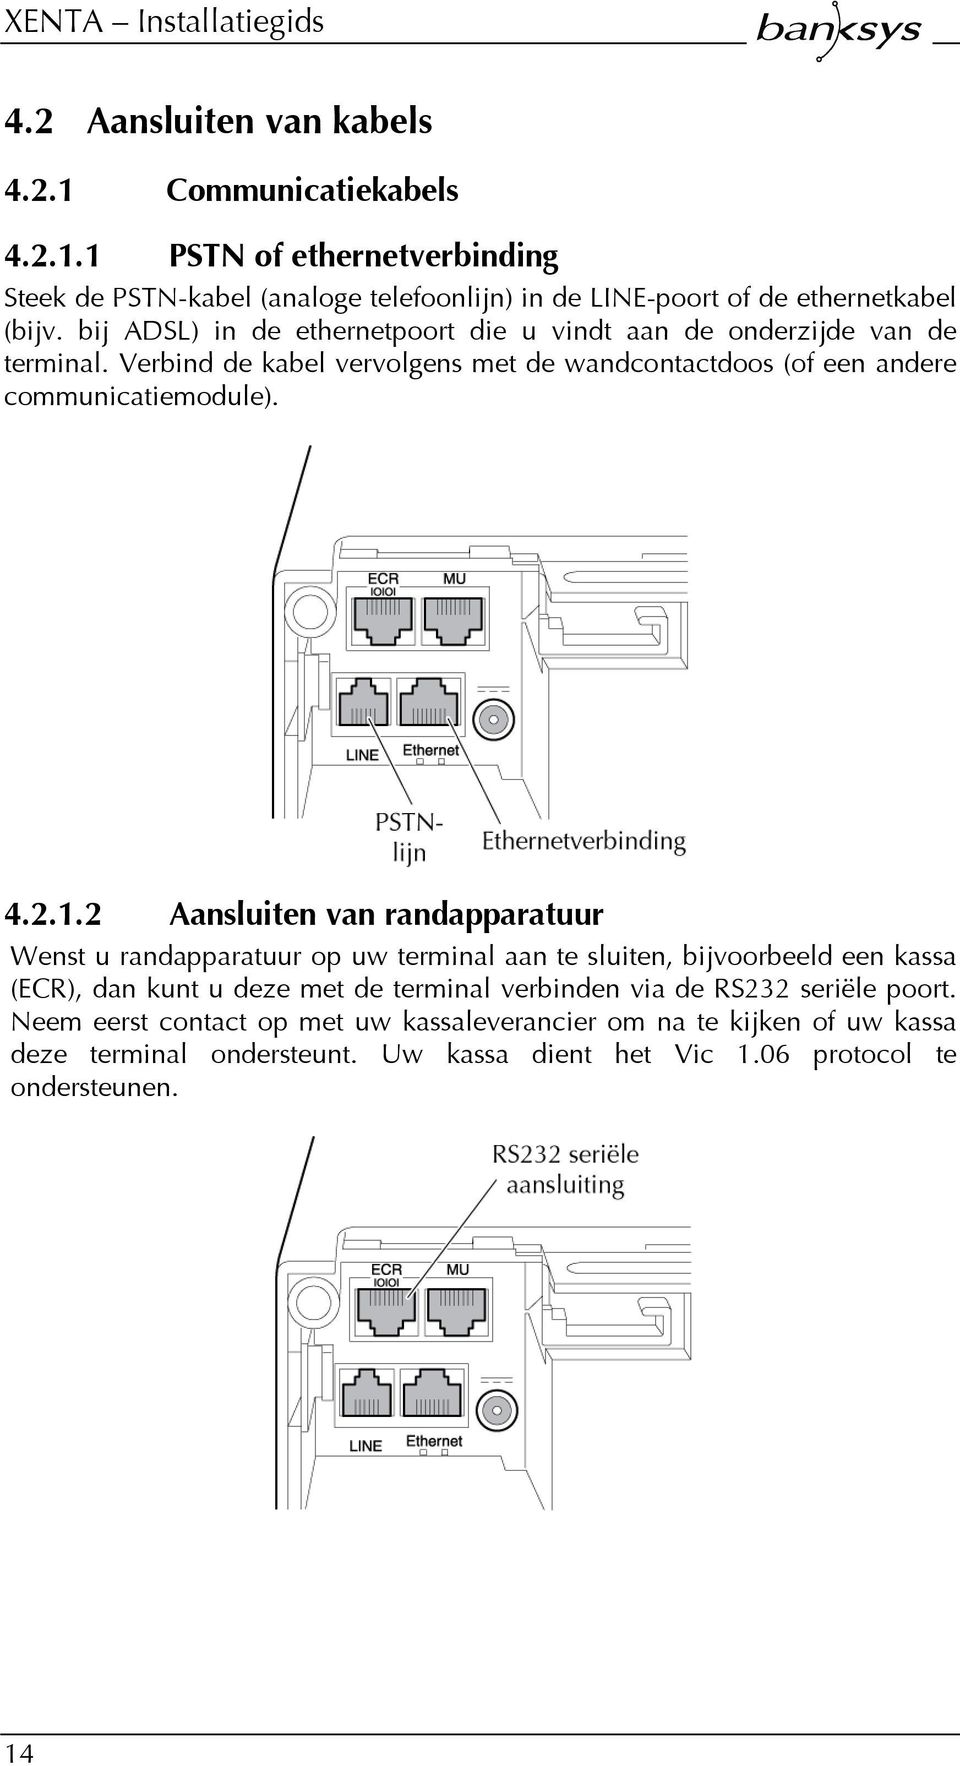 2 Aansluiten van randapparatuur Wenst u randapparatuur op uw terminal aan te sluiten, bijvoorbeeld een kassa (ECR), dan kunt u deze met de terminal verbinden via de RS232